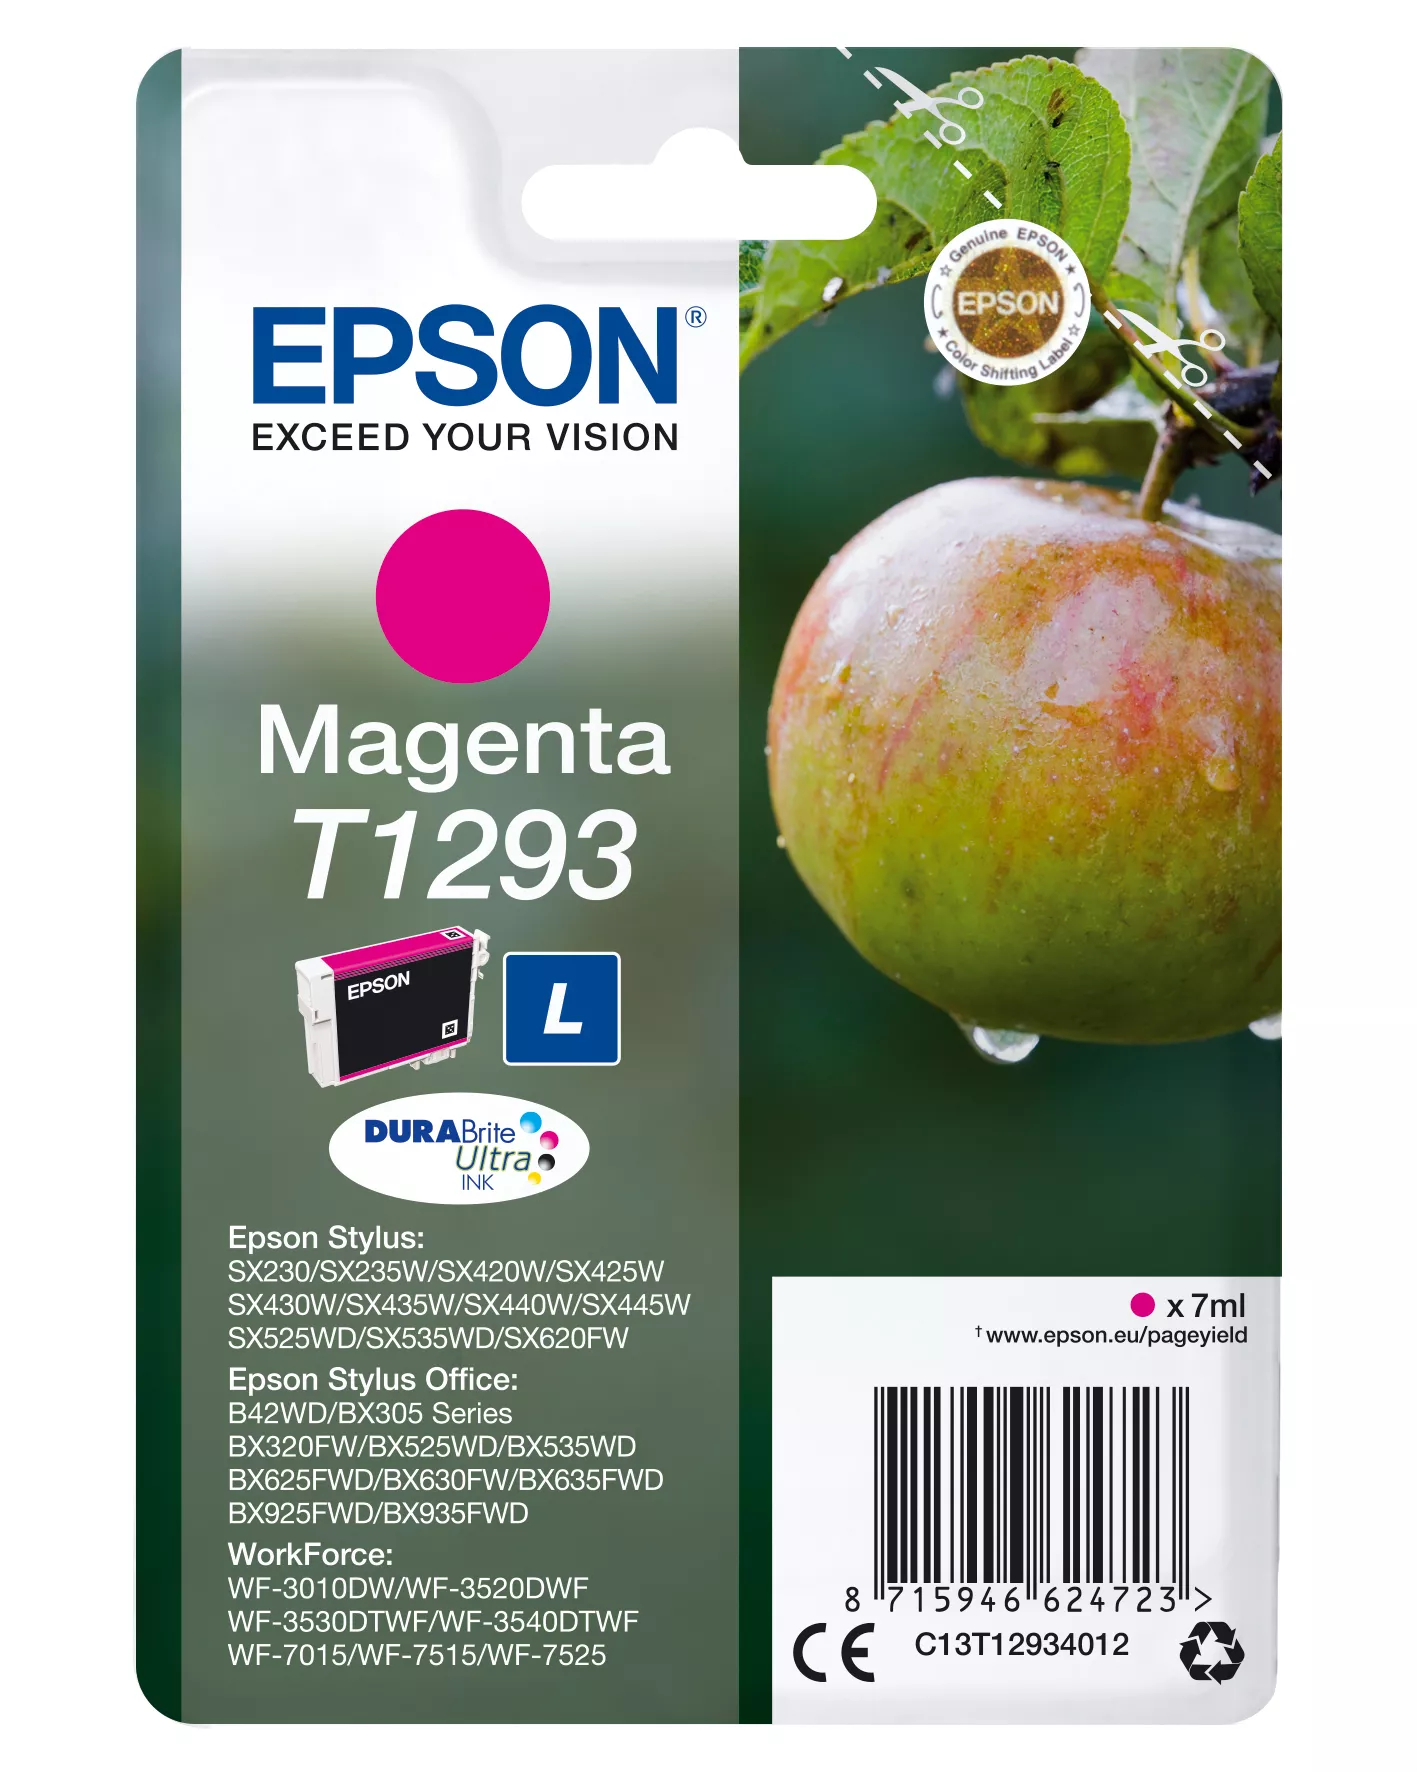 Vente EPSON T1293 cartouche d encre magenta haute capacité 7ml au meilleur prix